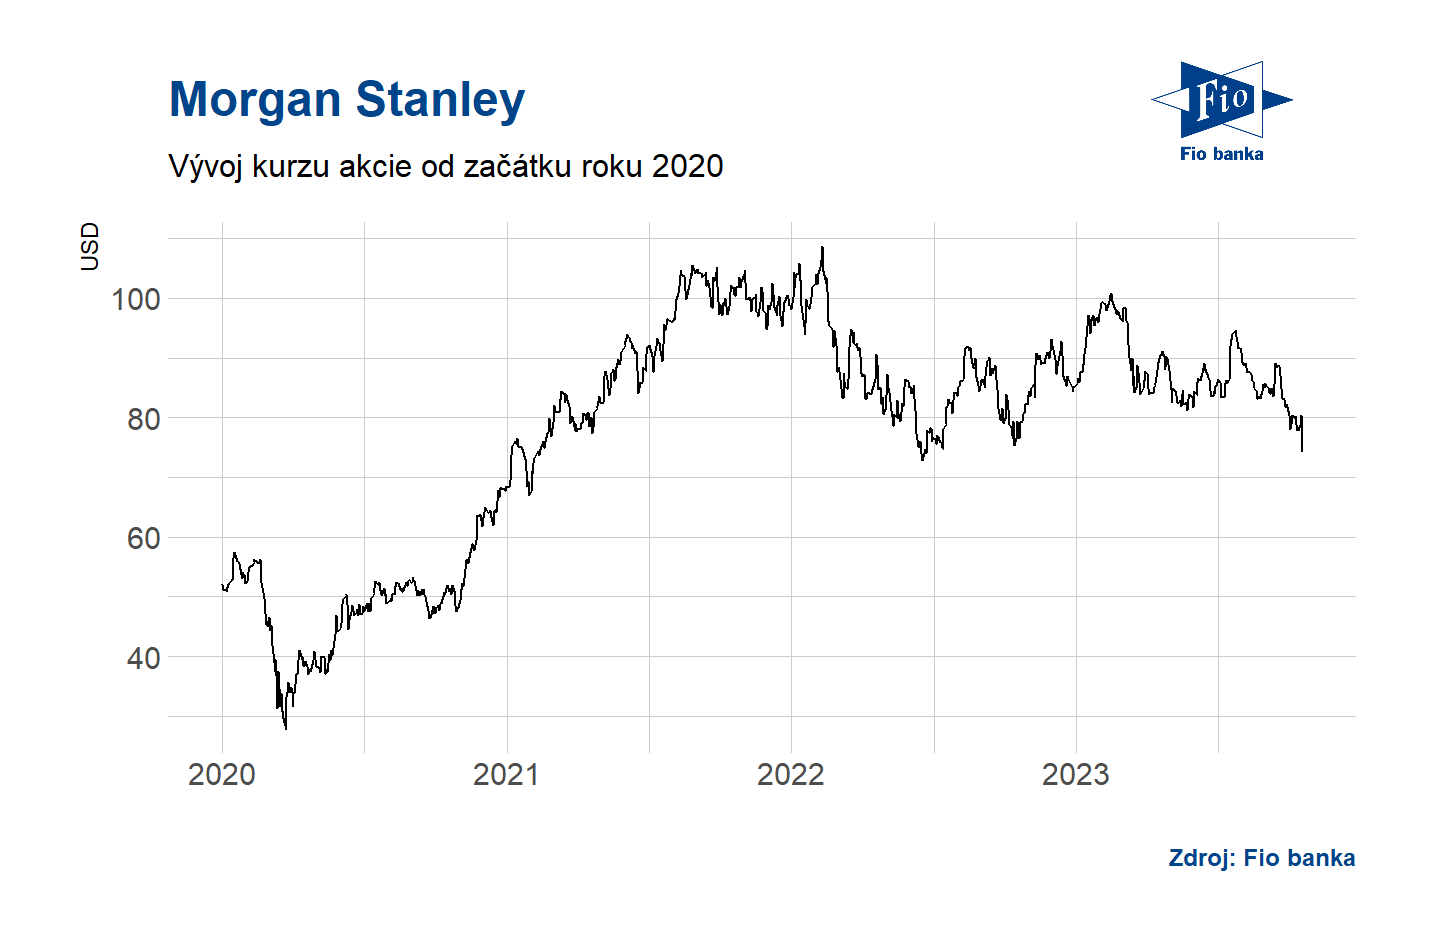 Vývoj akcií Morgan Stanley